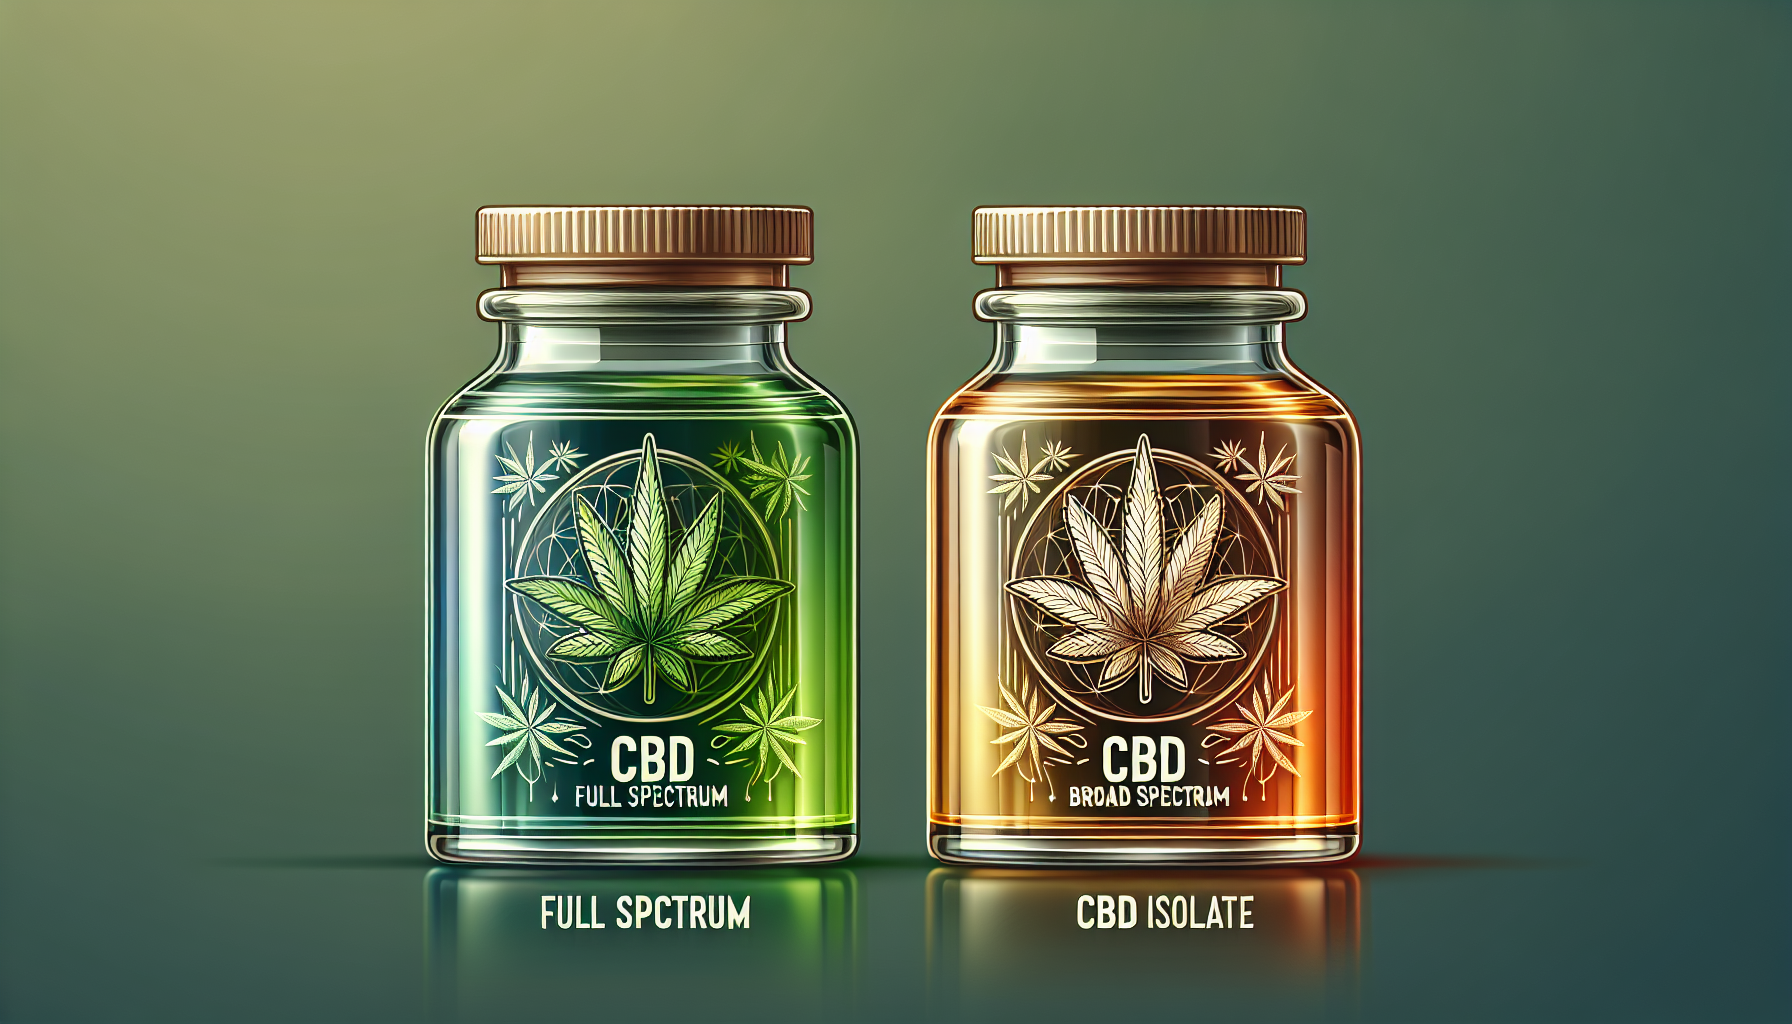 Illustration of full spectrum CBD, broad spectrum CBD, and CBD isolate